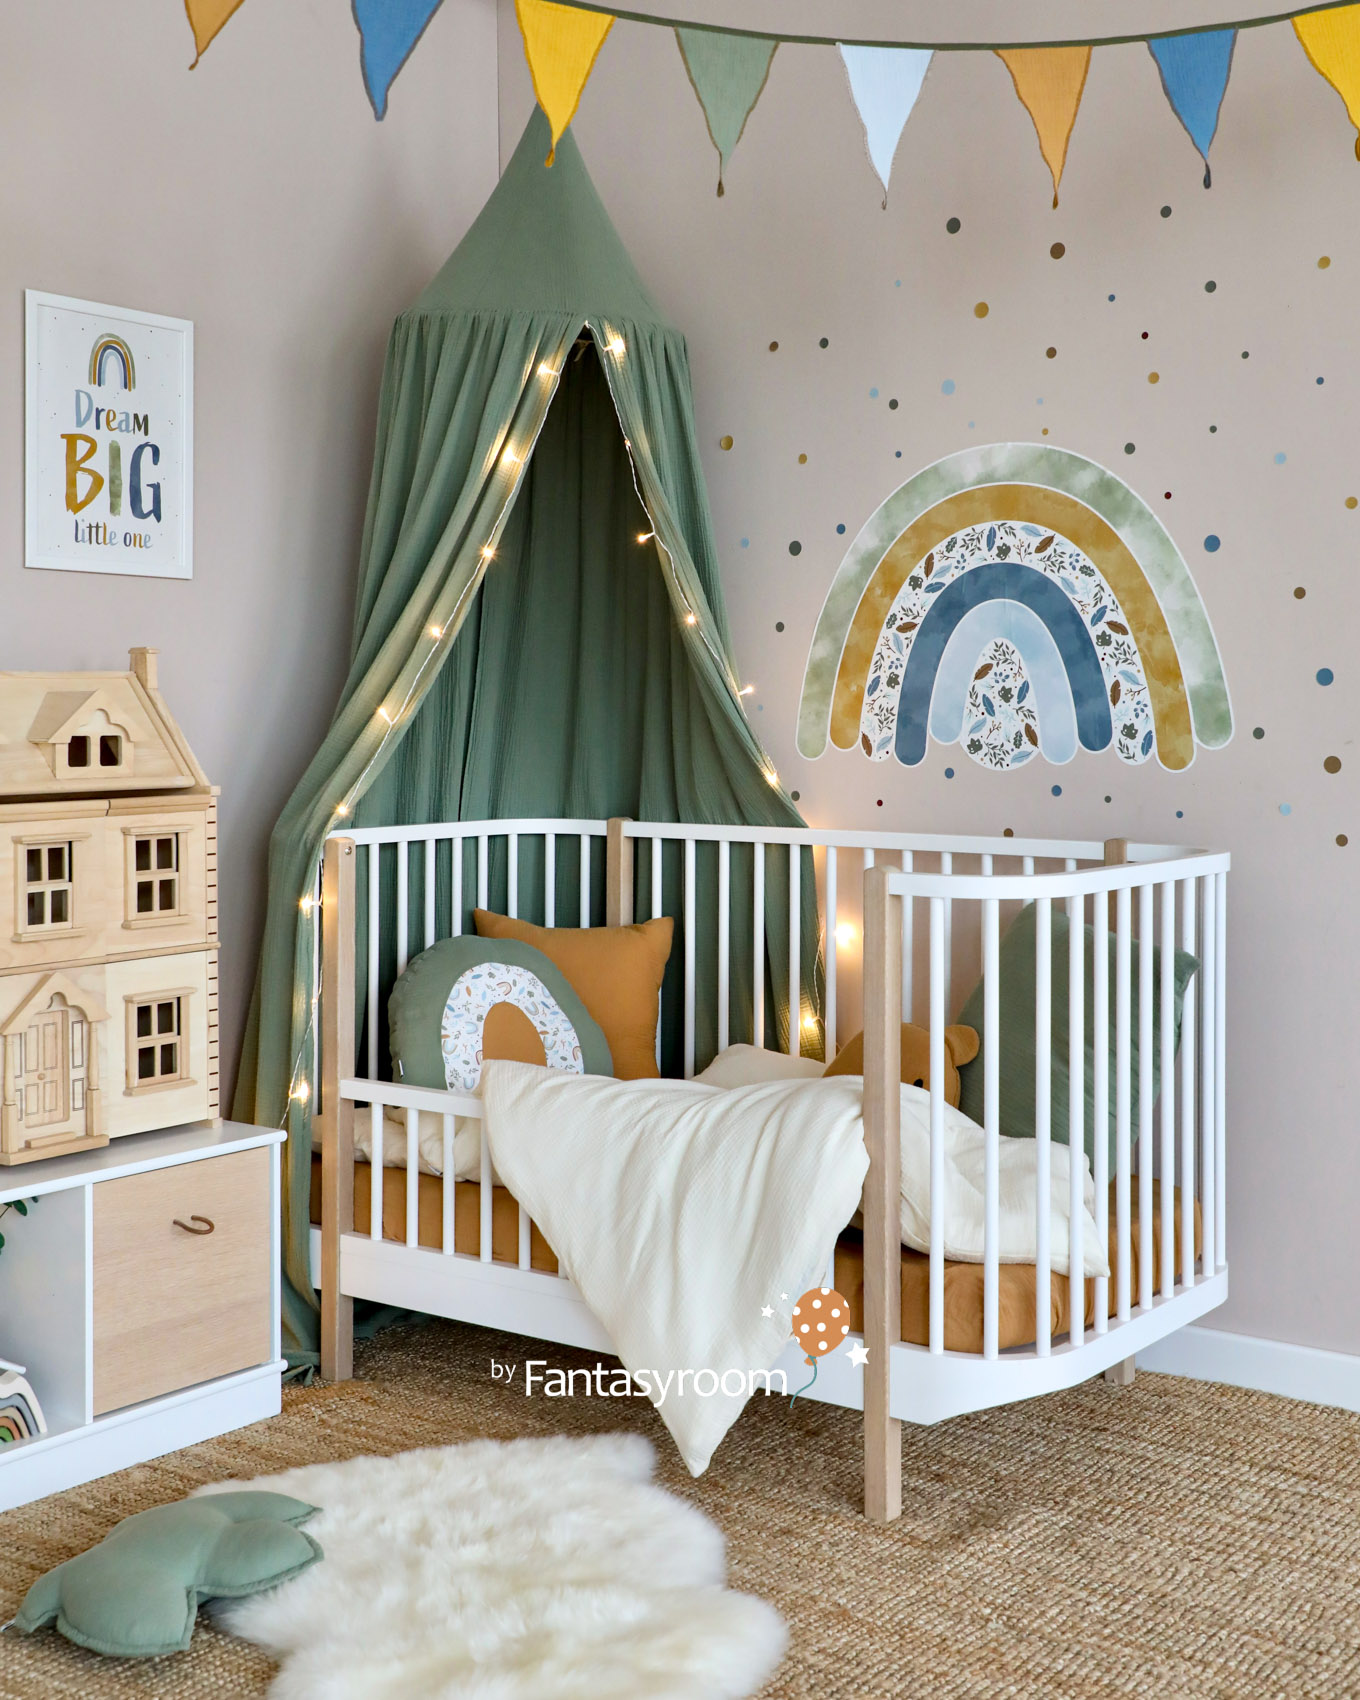 Gemütliches Kinderzimmer mit Kleinkindbett, Baldachin und Regenbogen Deko